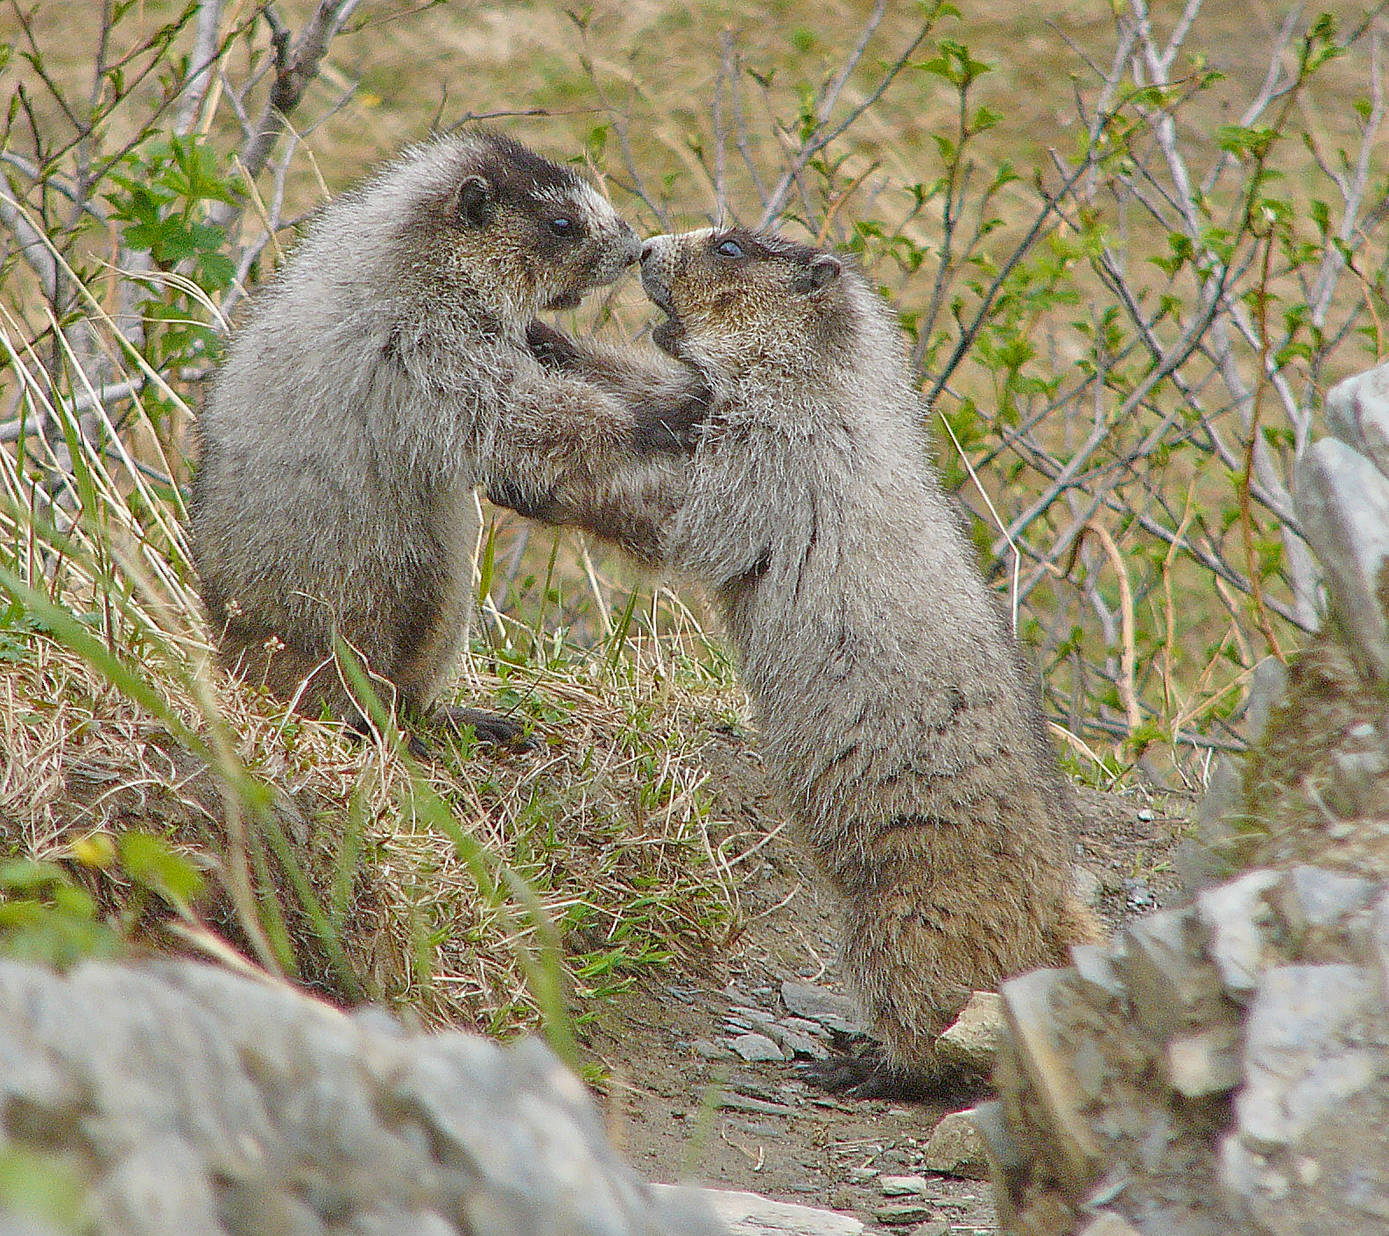 Juvenile marmots play-box near their den. (Photo by Bob Armstrong)